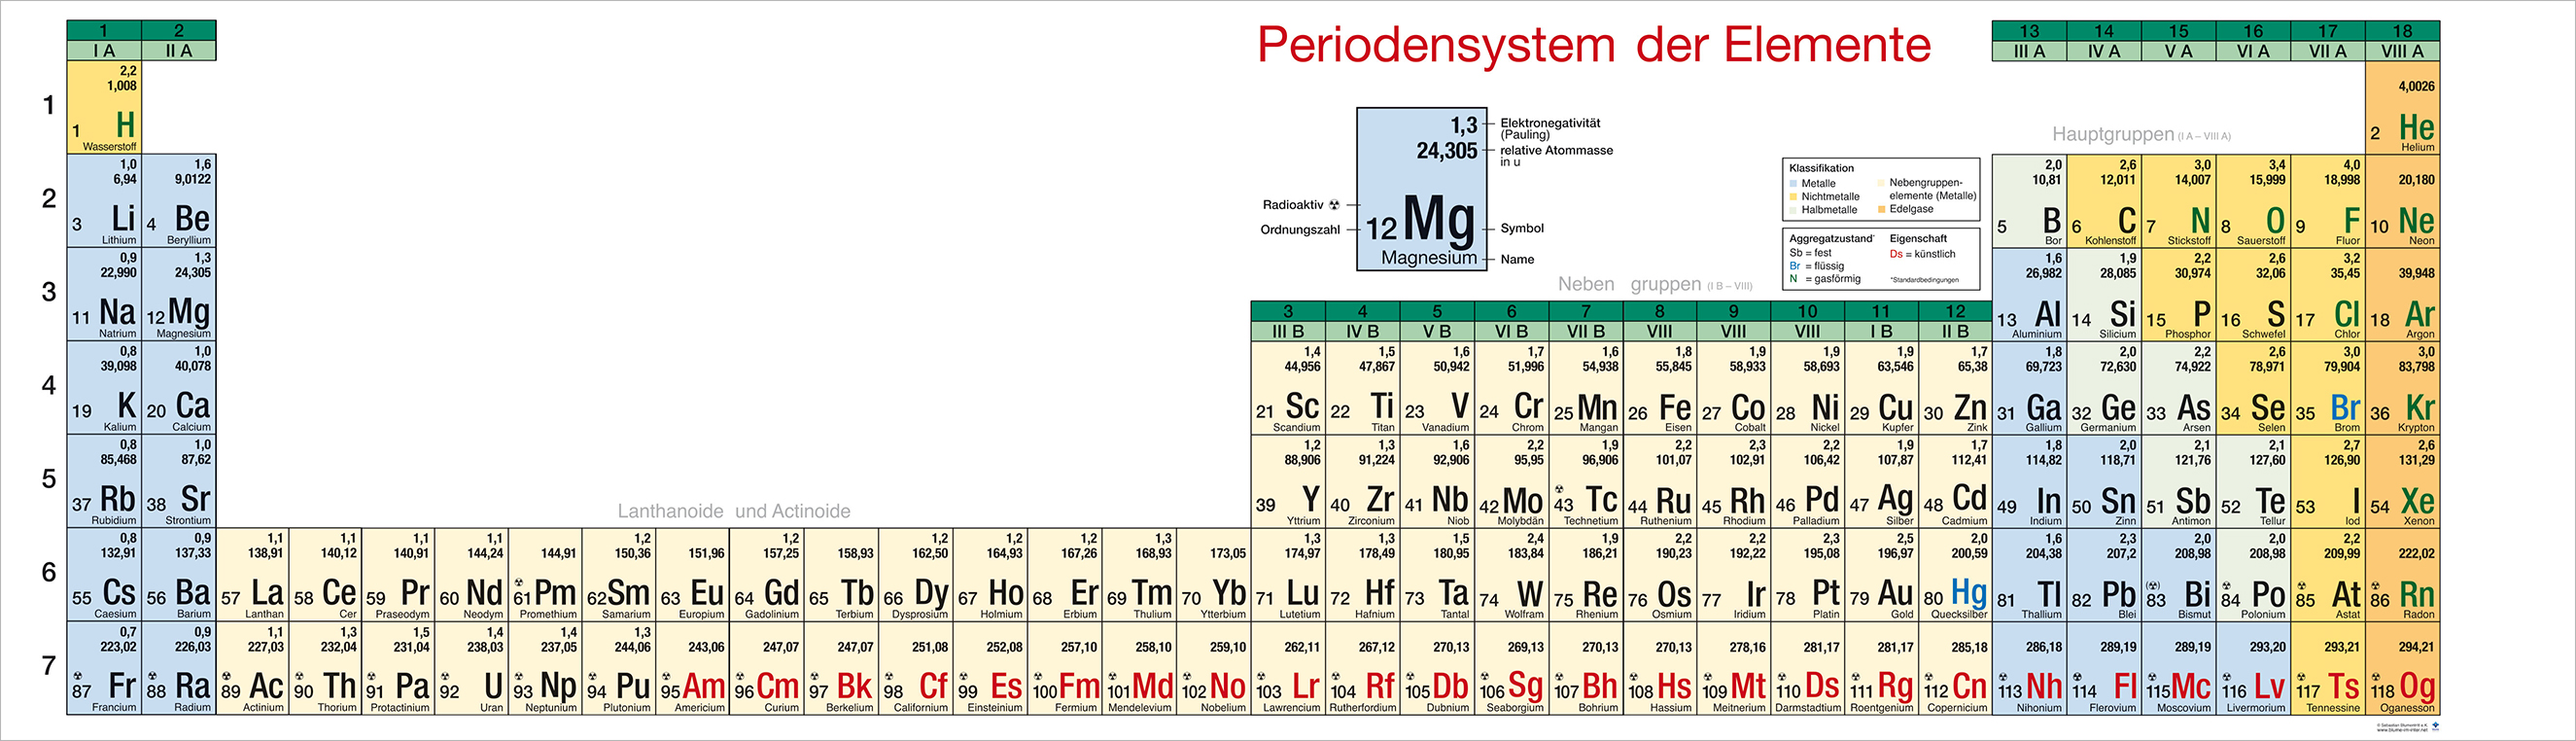 Periodensystem der Elemente - Wandklapptafel